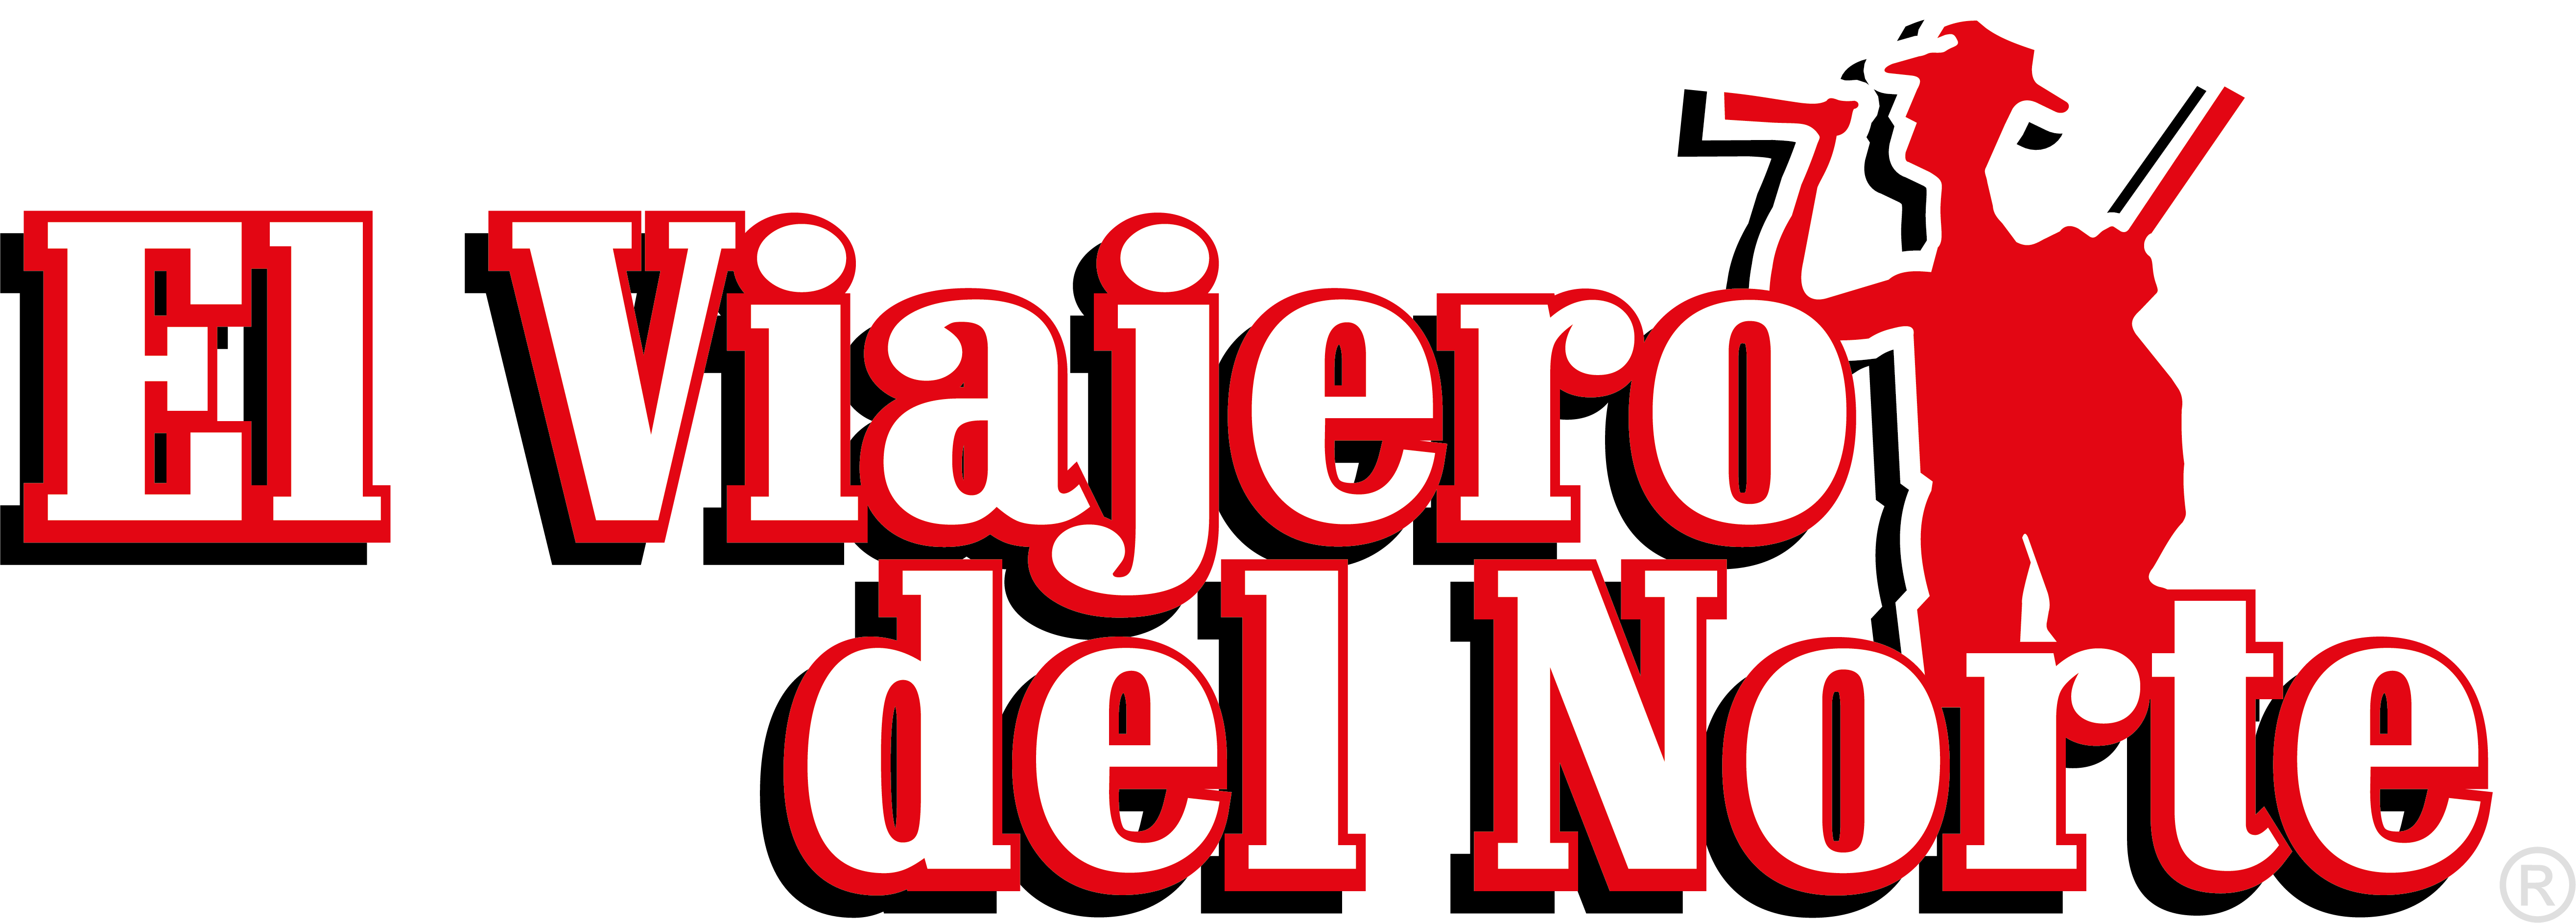 RIFLE COATLICUE Edición Limitada de madera Mendoza – El Viajero